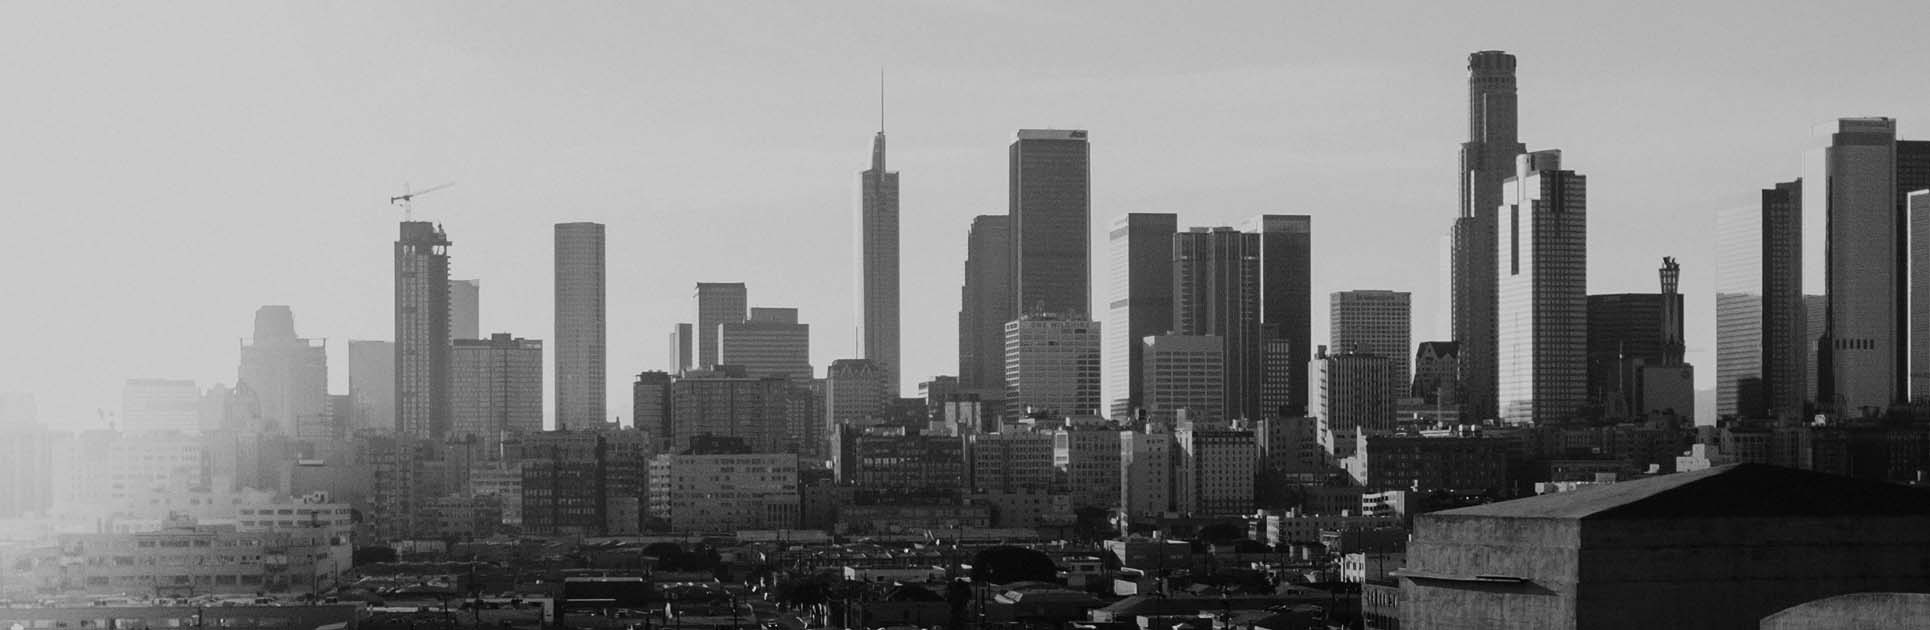 Image of the LA skyline